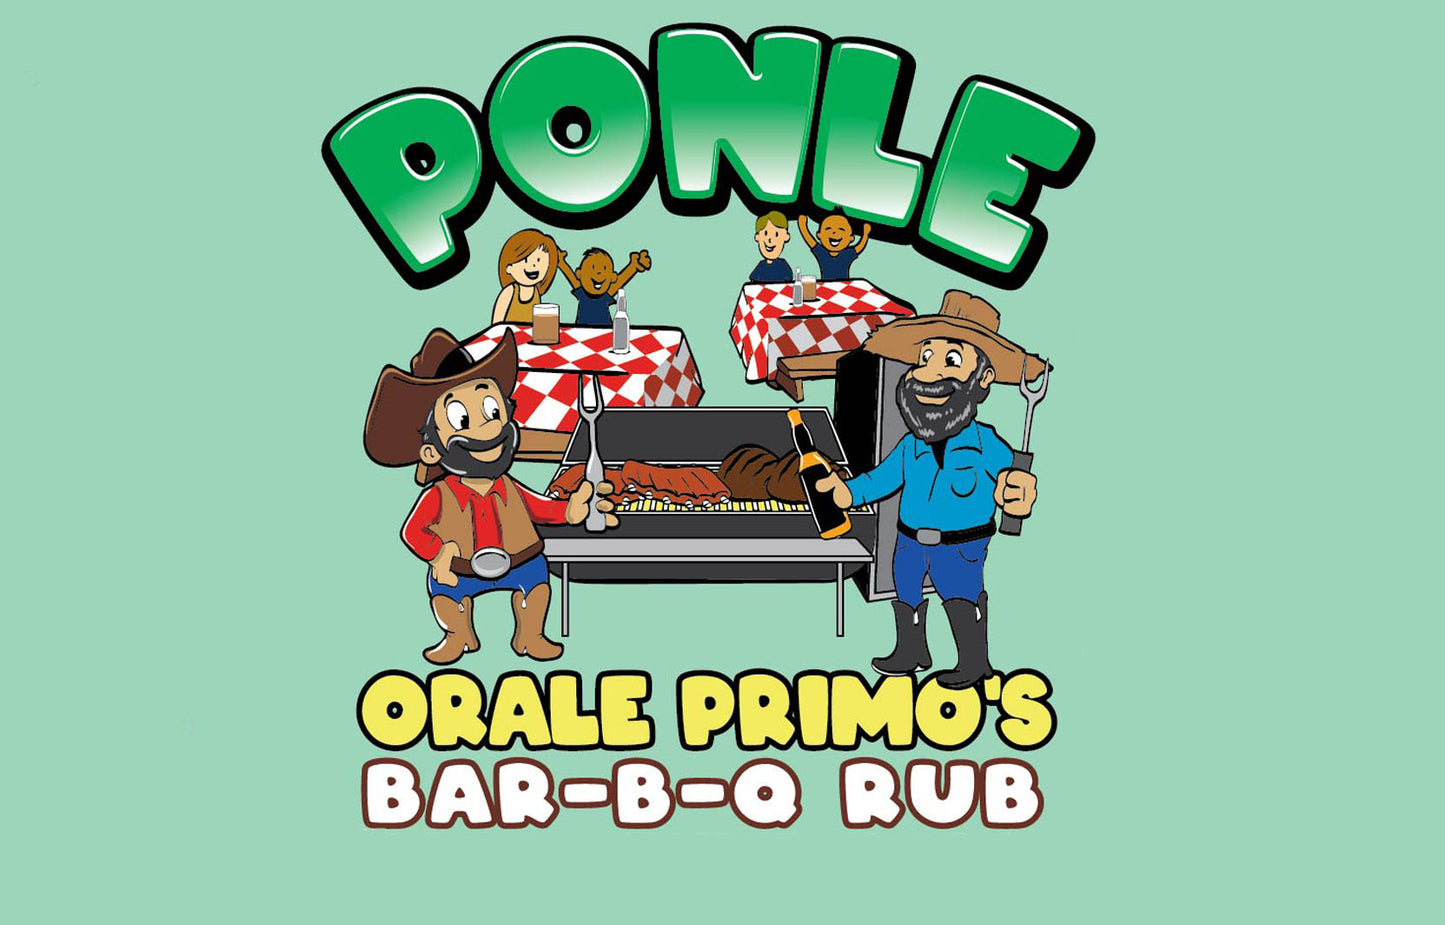 ORALE PRIMO'S BAR-B-Q RUB